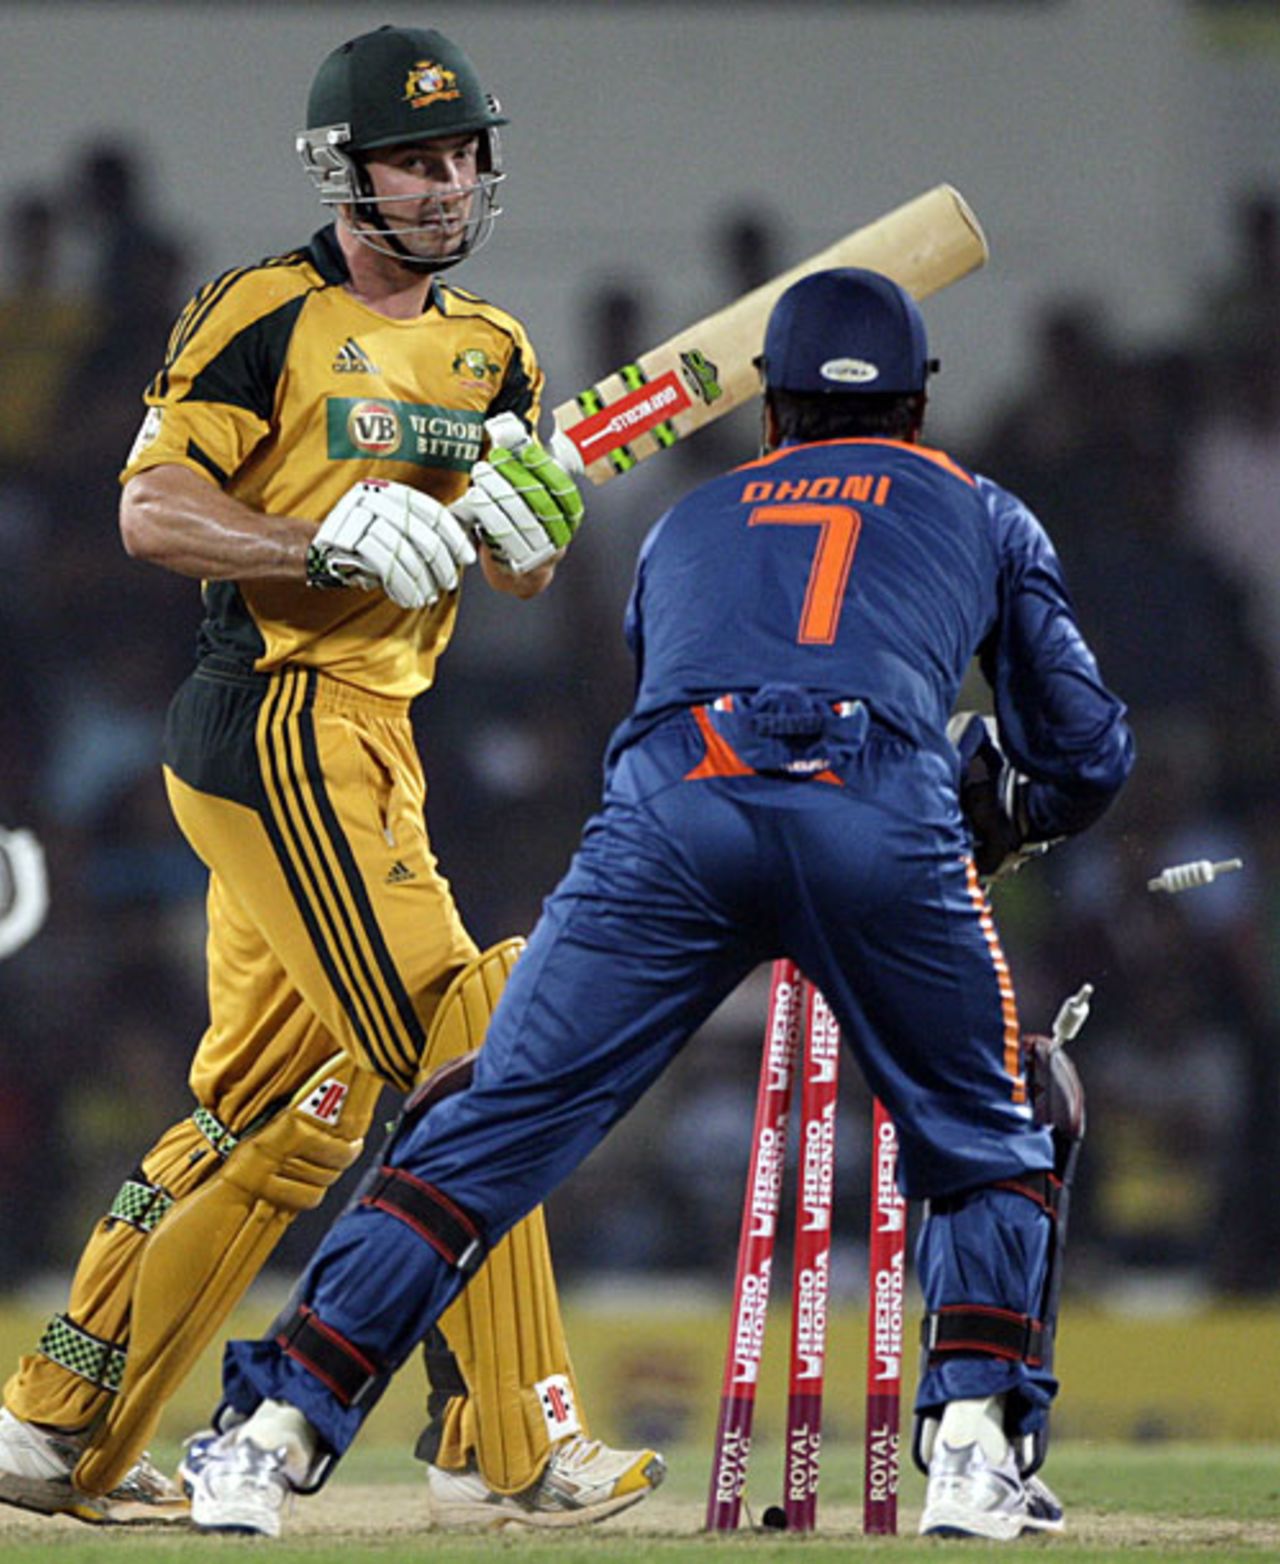 Shaun Marsh is stumped off Ravindra Jadeja, India v Australia, 2nd ODI, Nagpur, October 28, 2009